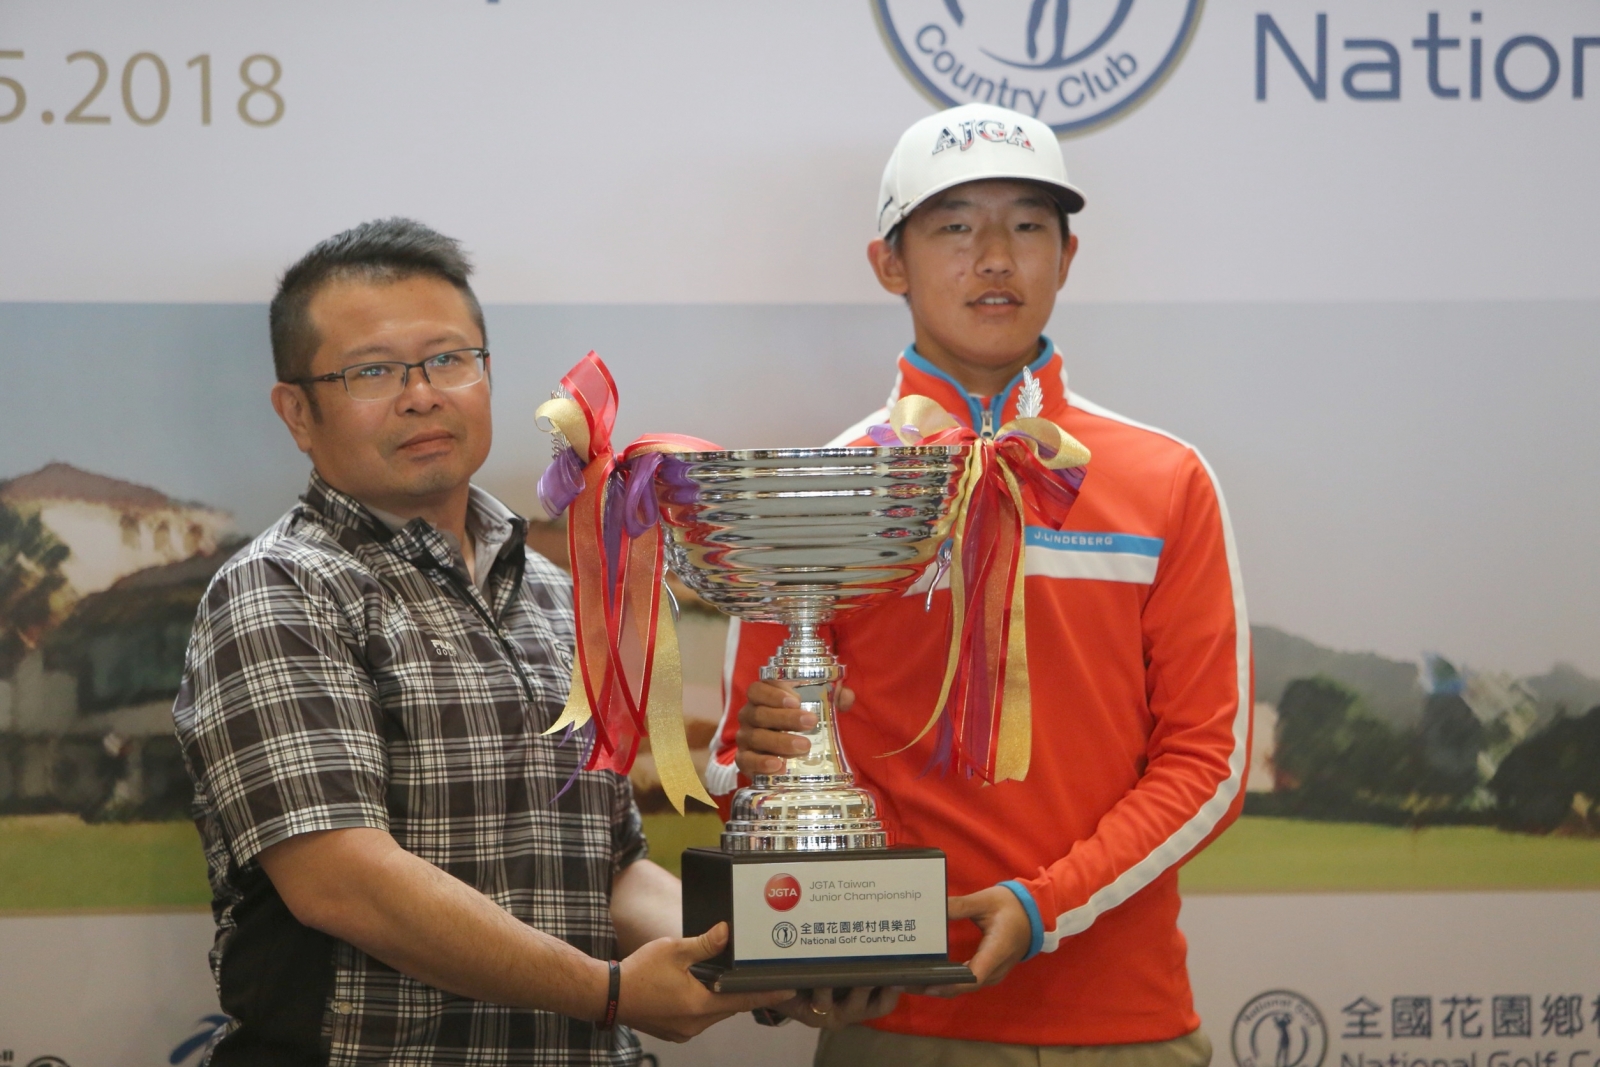 全國球場總經理吳憲紘(左)頒發冠軍獎杯給男子選手唐俊禕。